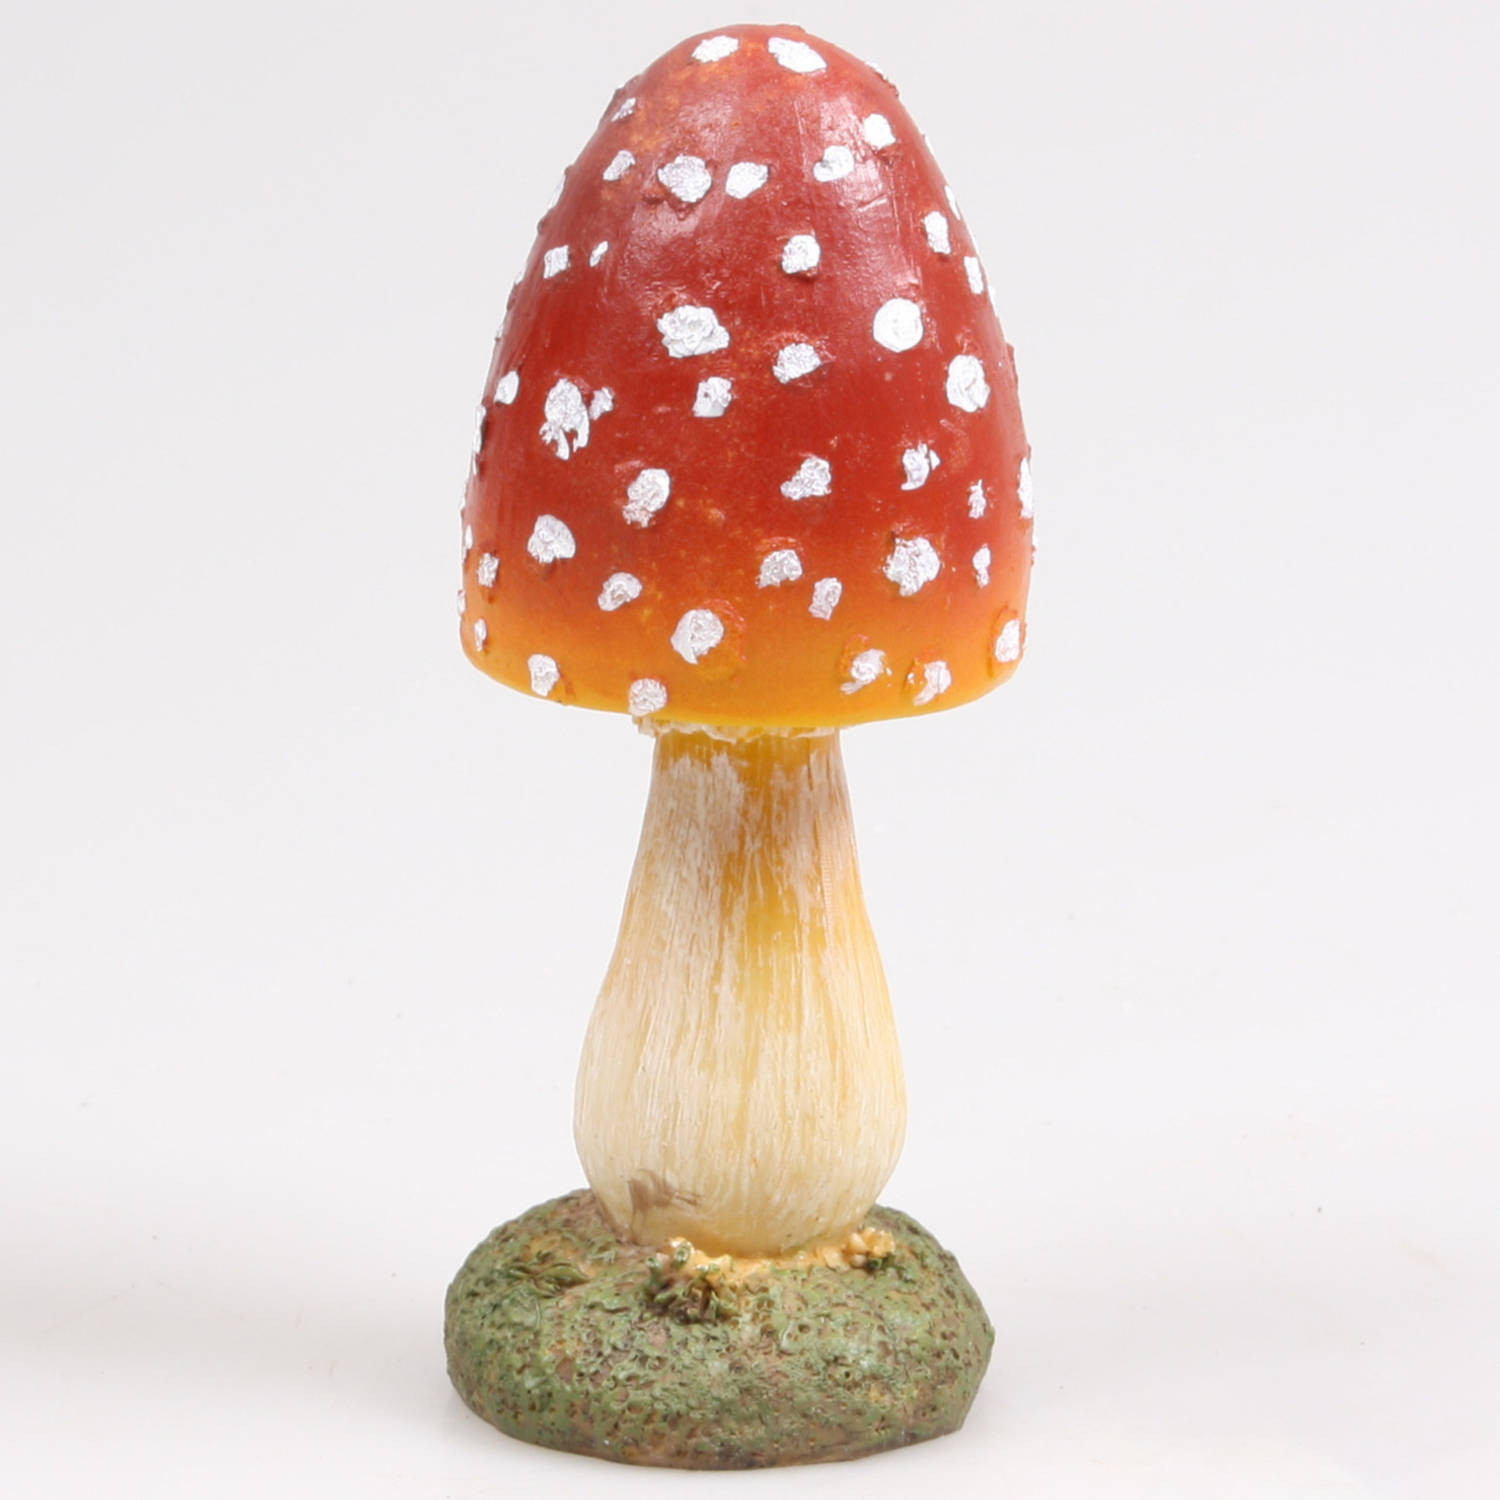 Decoratie huis/tuin beeldje paddenstoel - vliegenzwam - rood/wit - 7 x 18 cm - Tuinbeelden